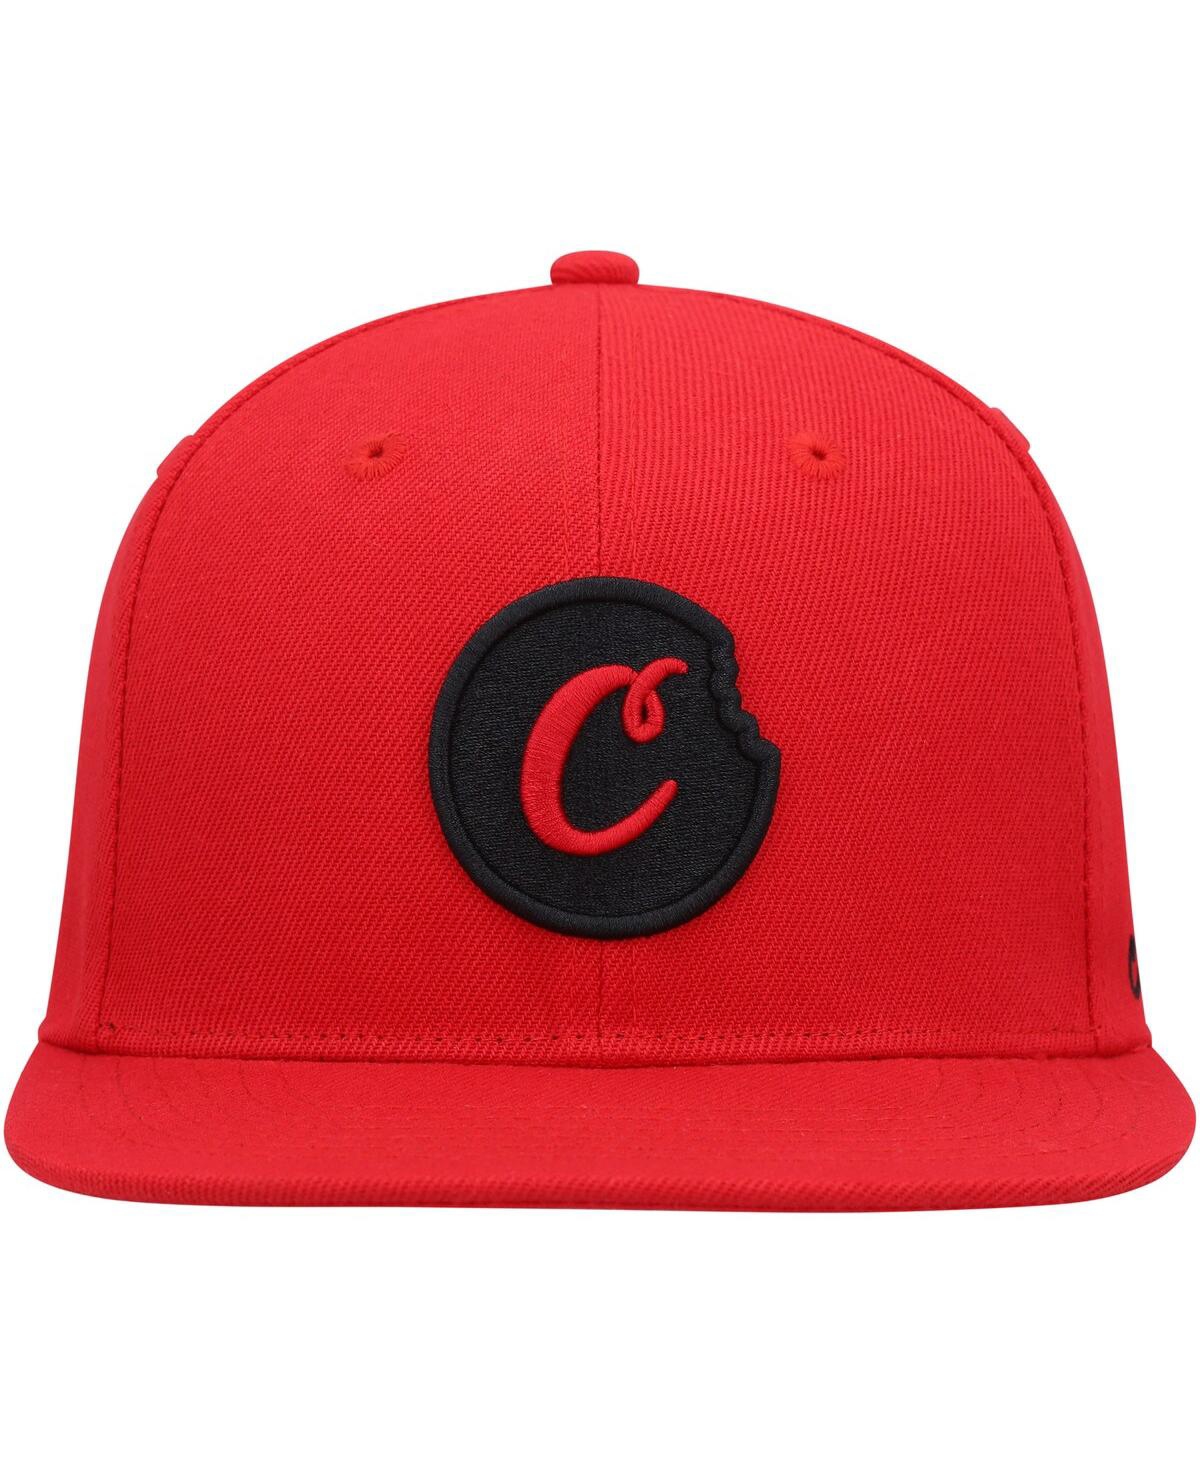 Shop Cookies Men's  Red C-bite Snapback Hat